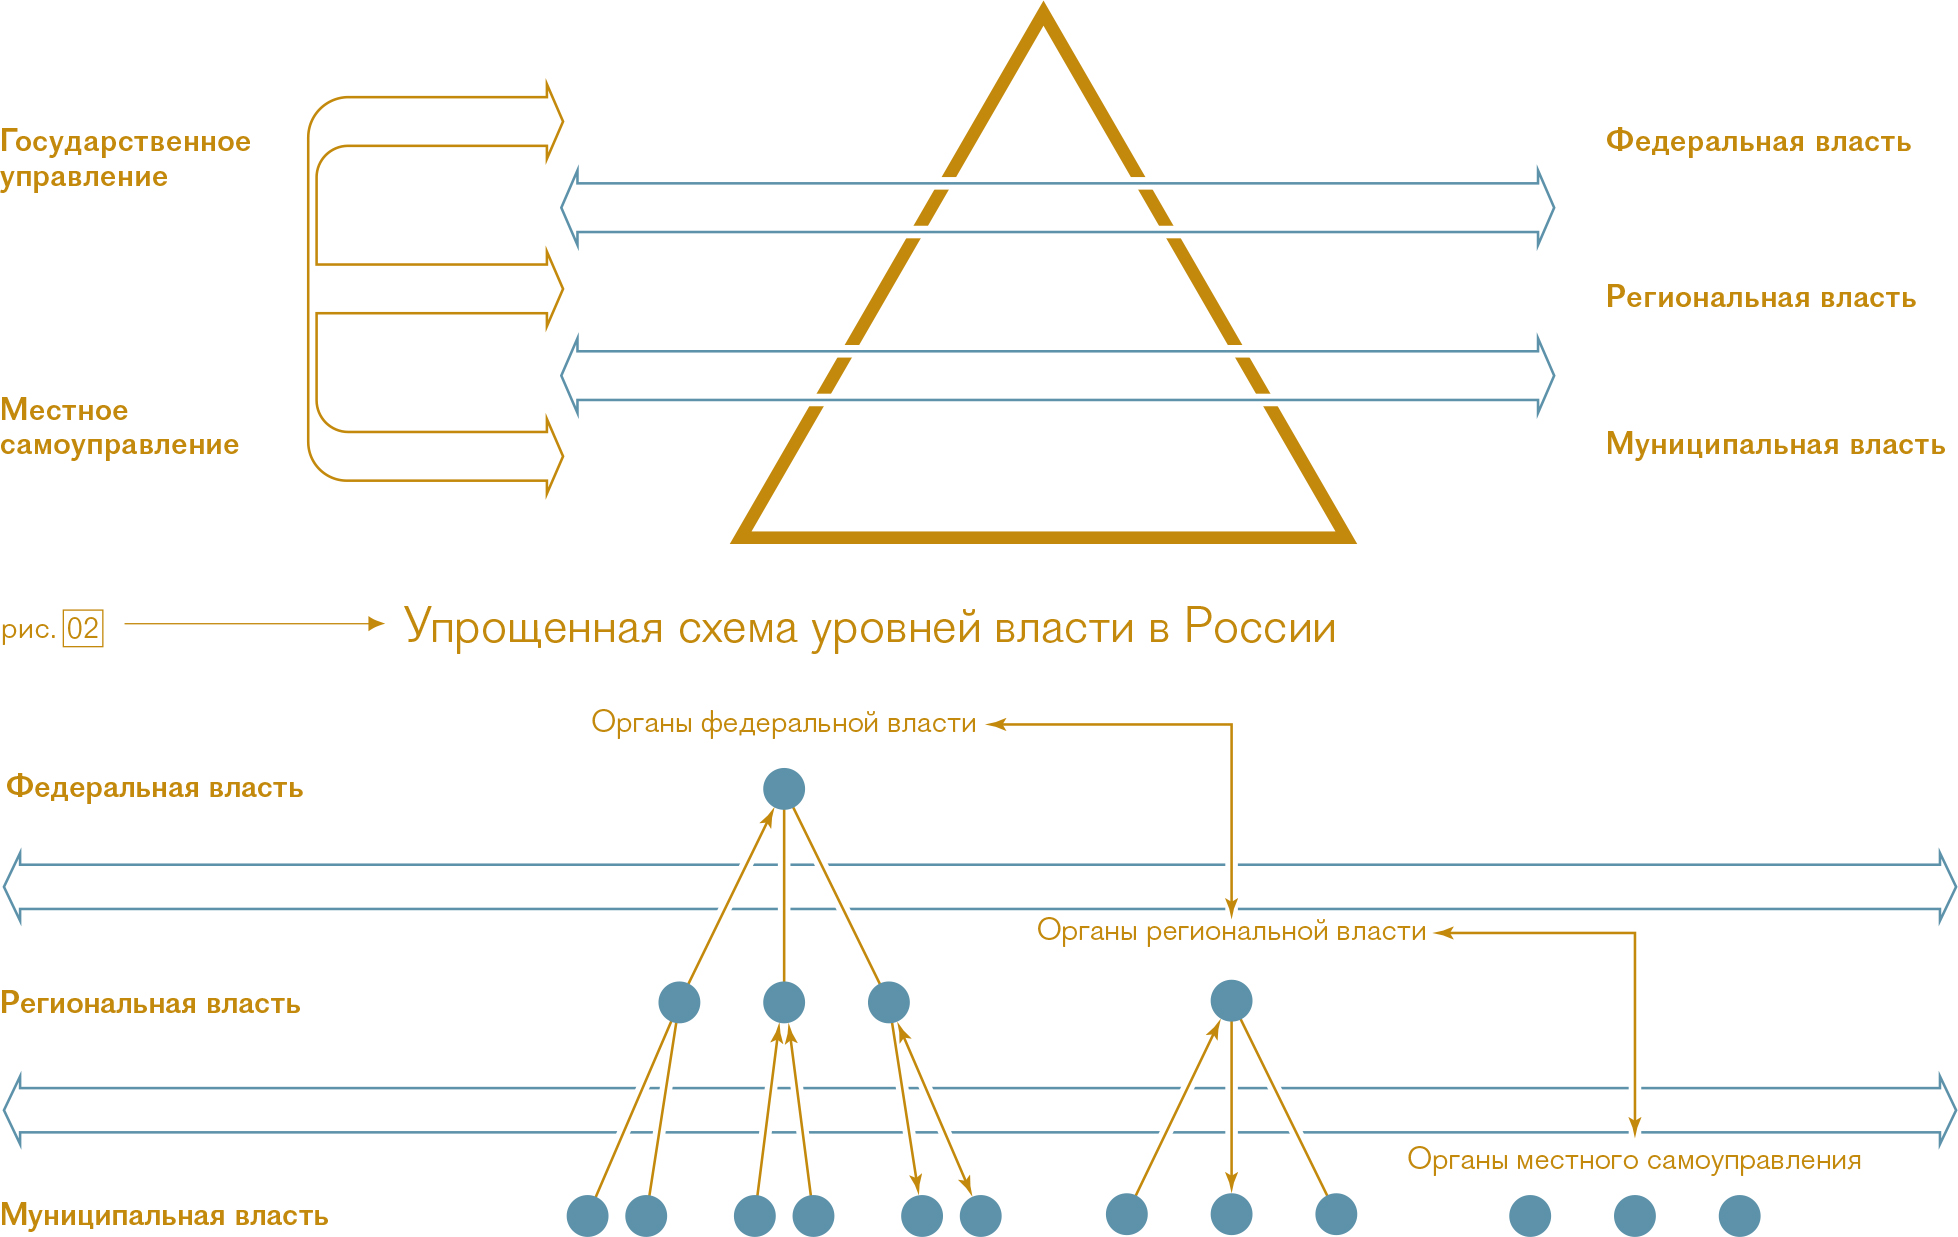 Рис. 1 Типичное представление об иерархии государственной власти в России